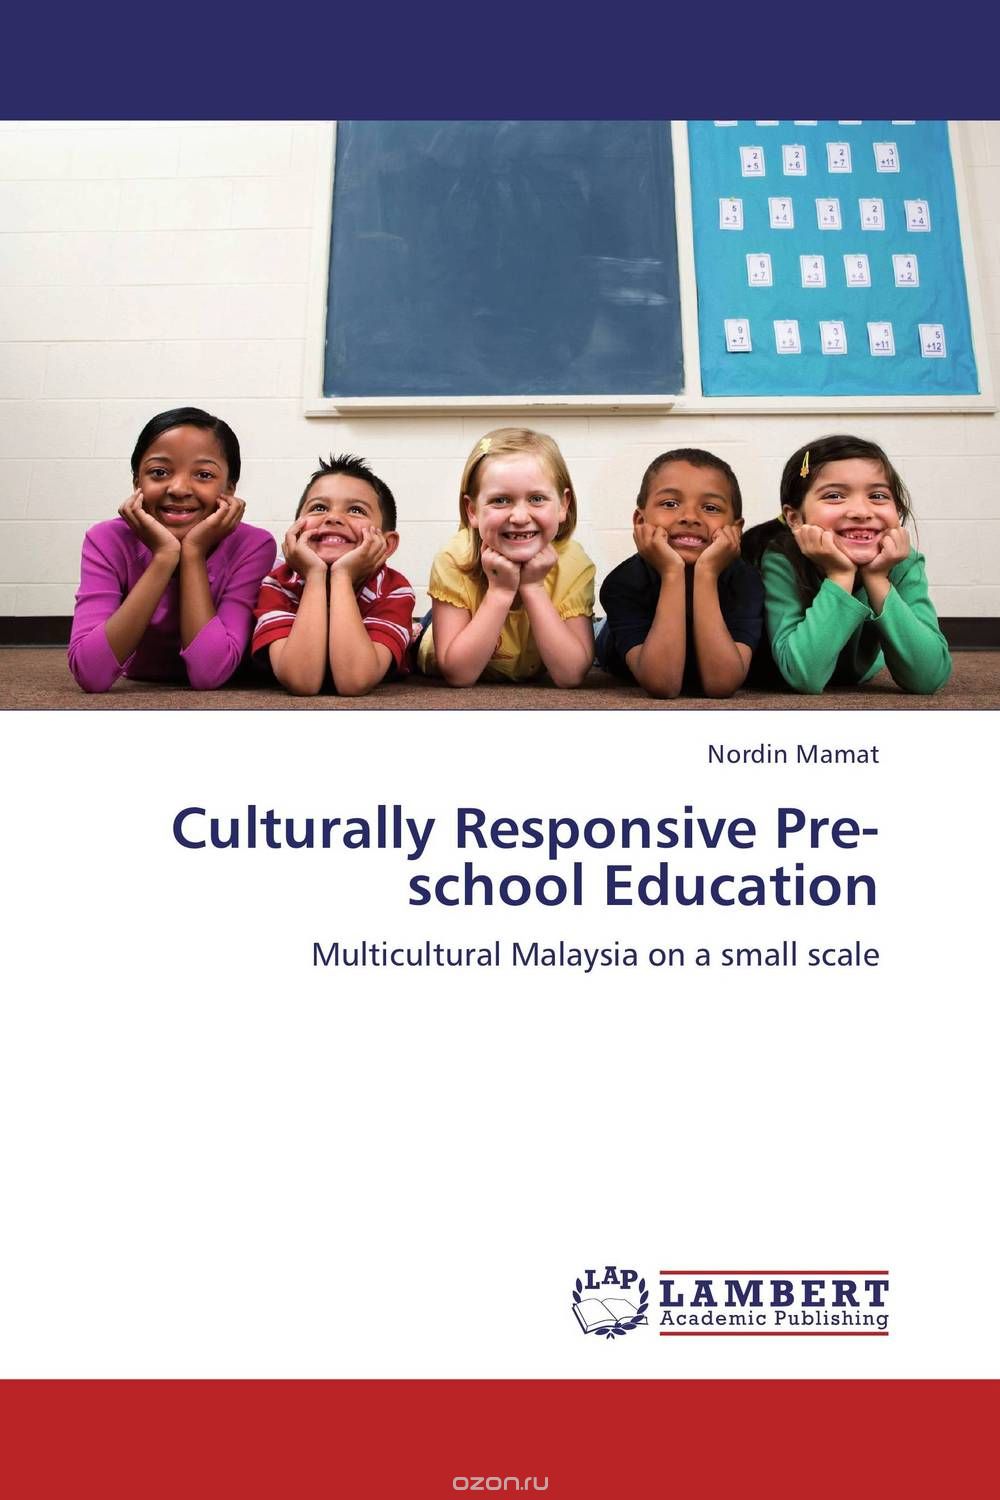 Скачать книгу "Culturally Responsive Pre-school Education"